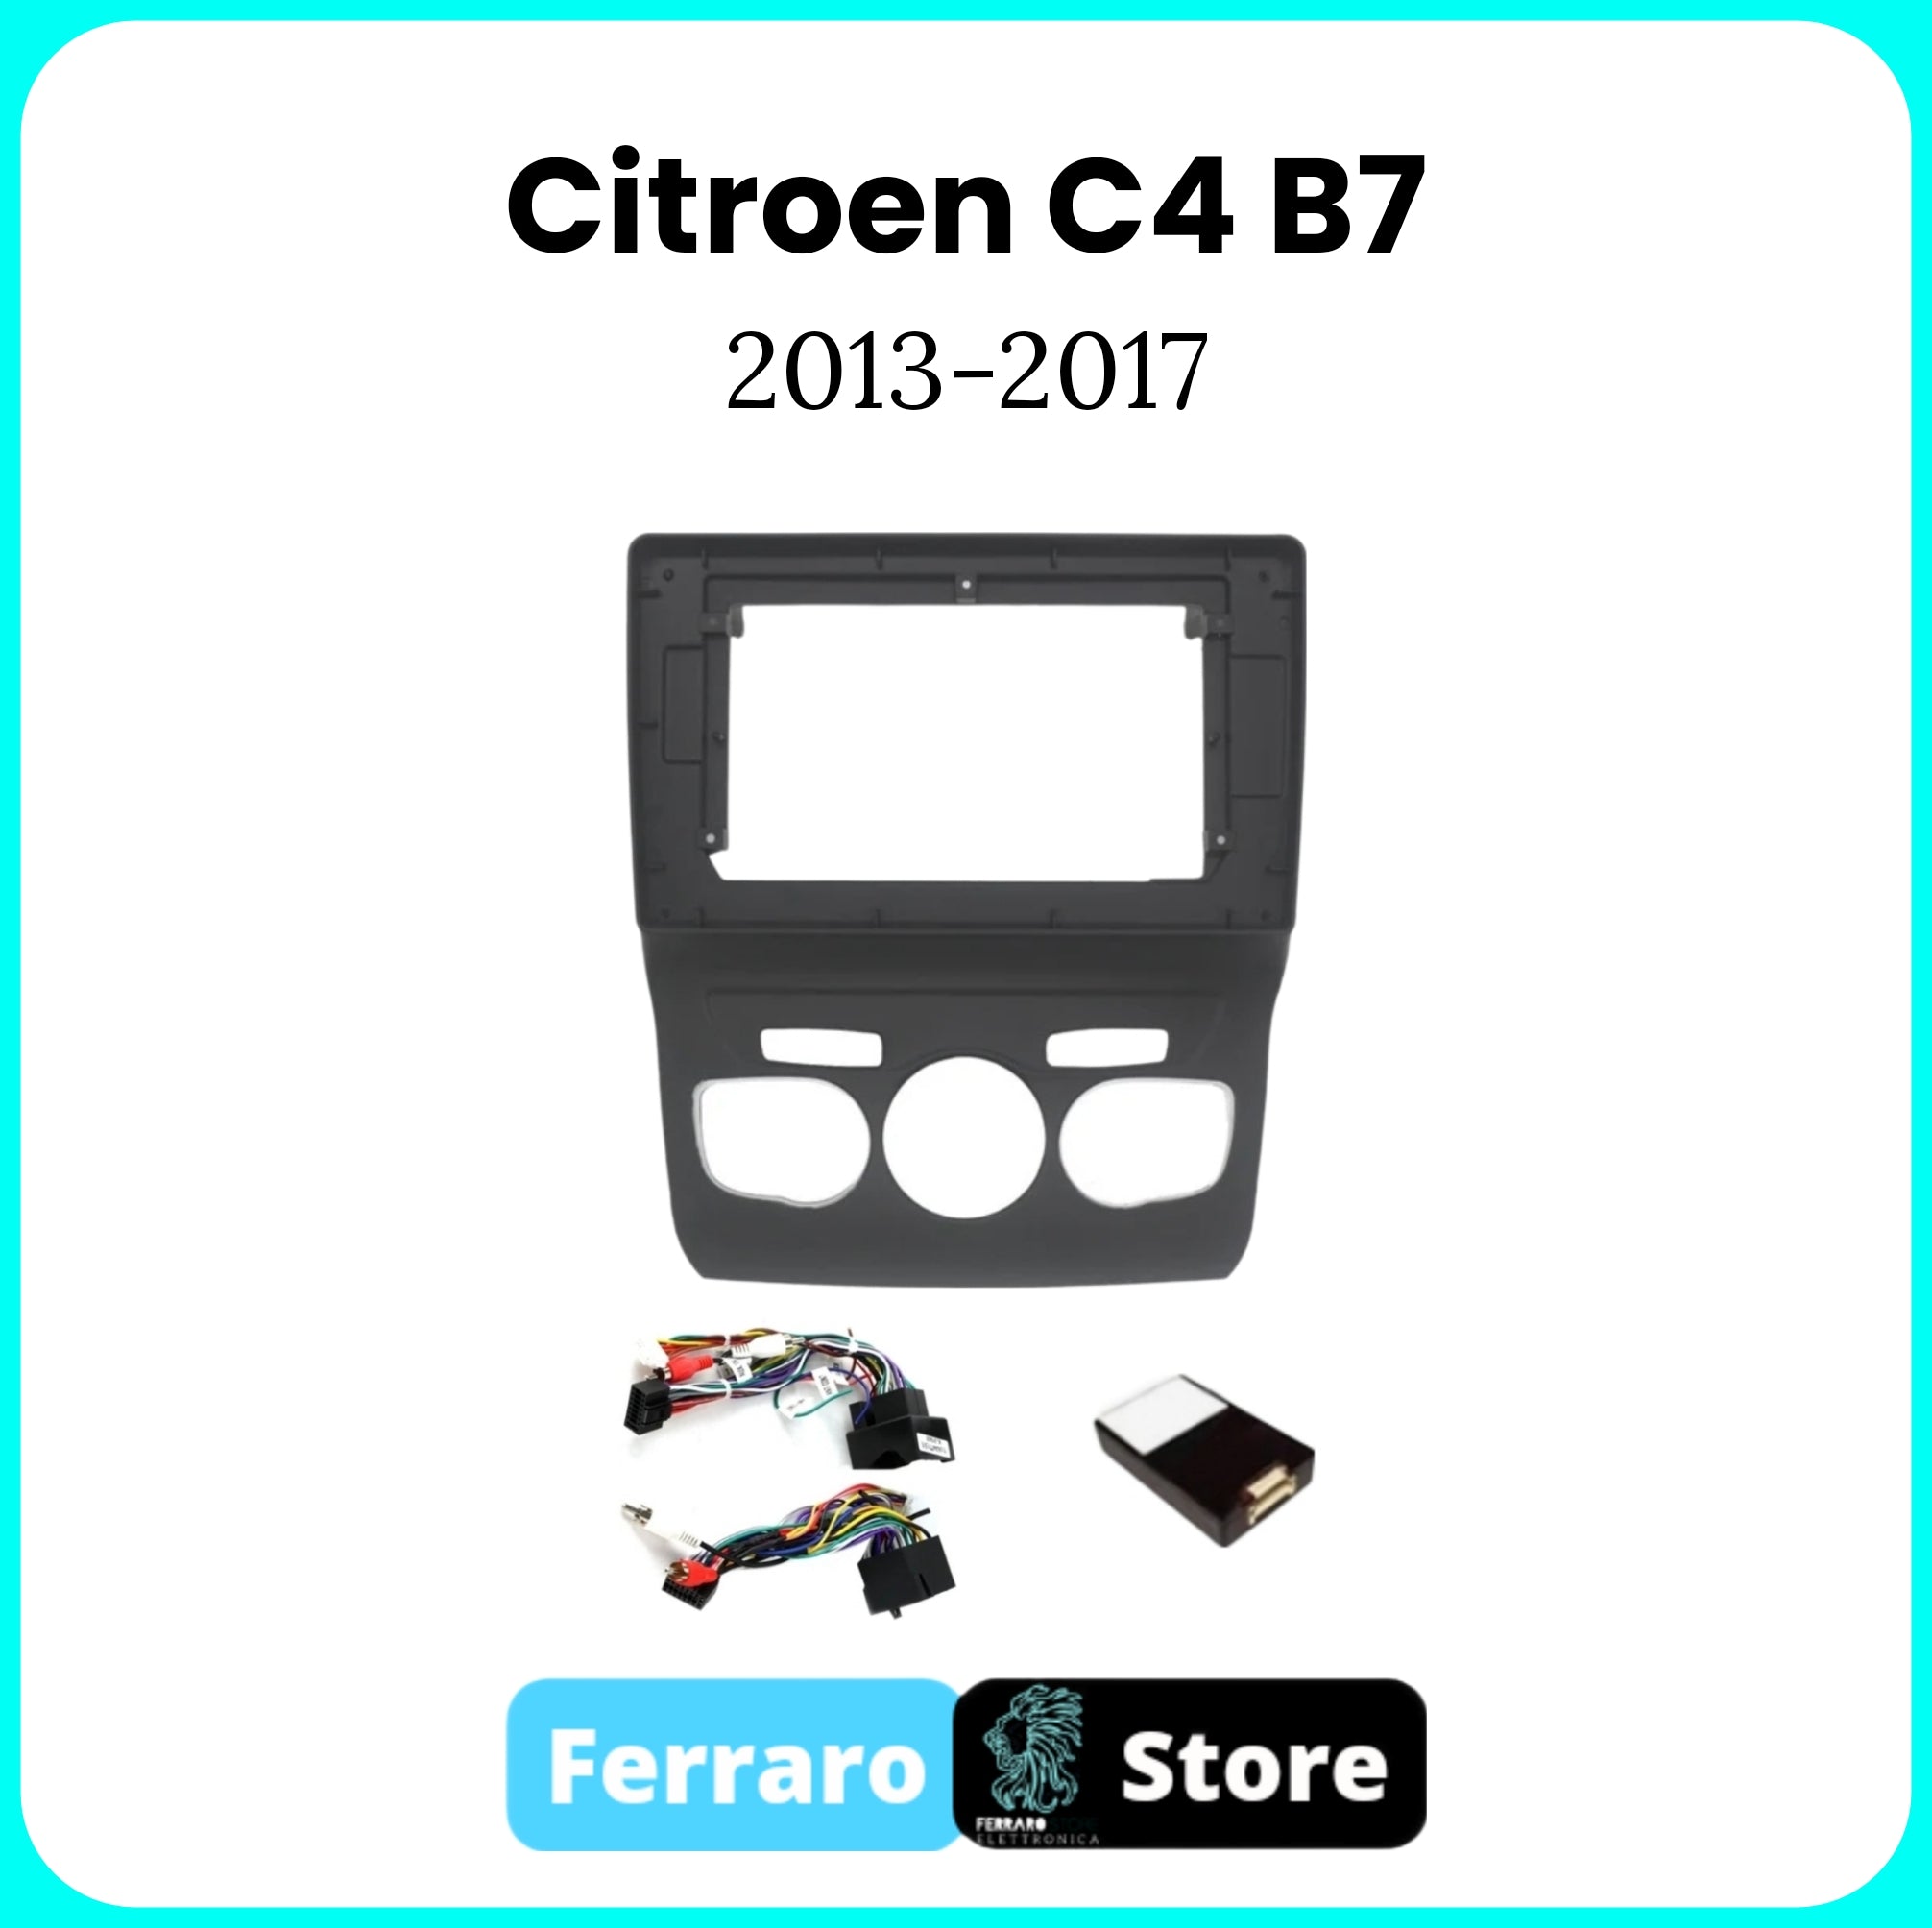 Kit Montaggio Autoradio 10.1"Pollici per CITROEN C4 B7 [2013 - 2016] - Mascherina, Cablaggio Autoradio Android